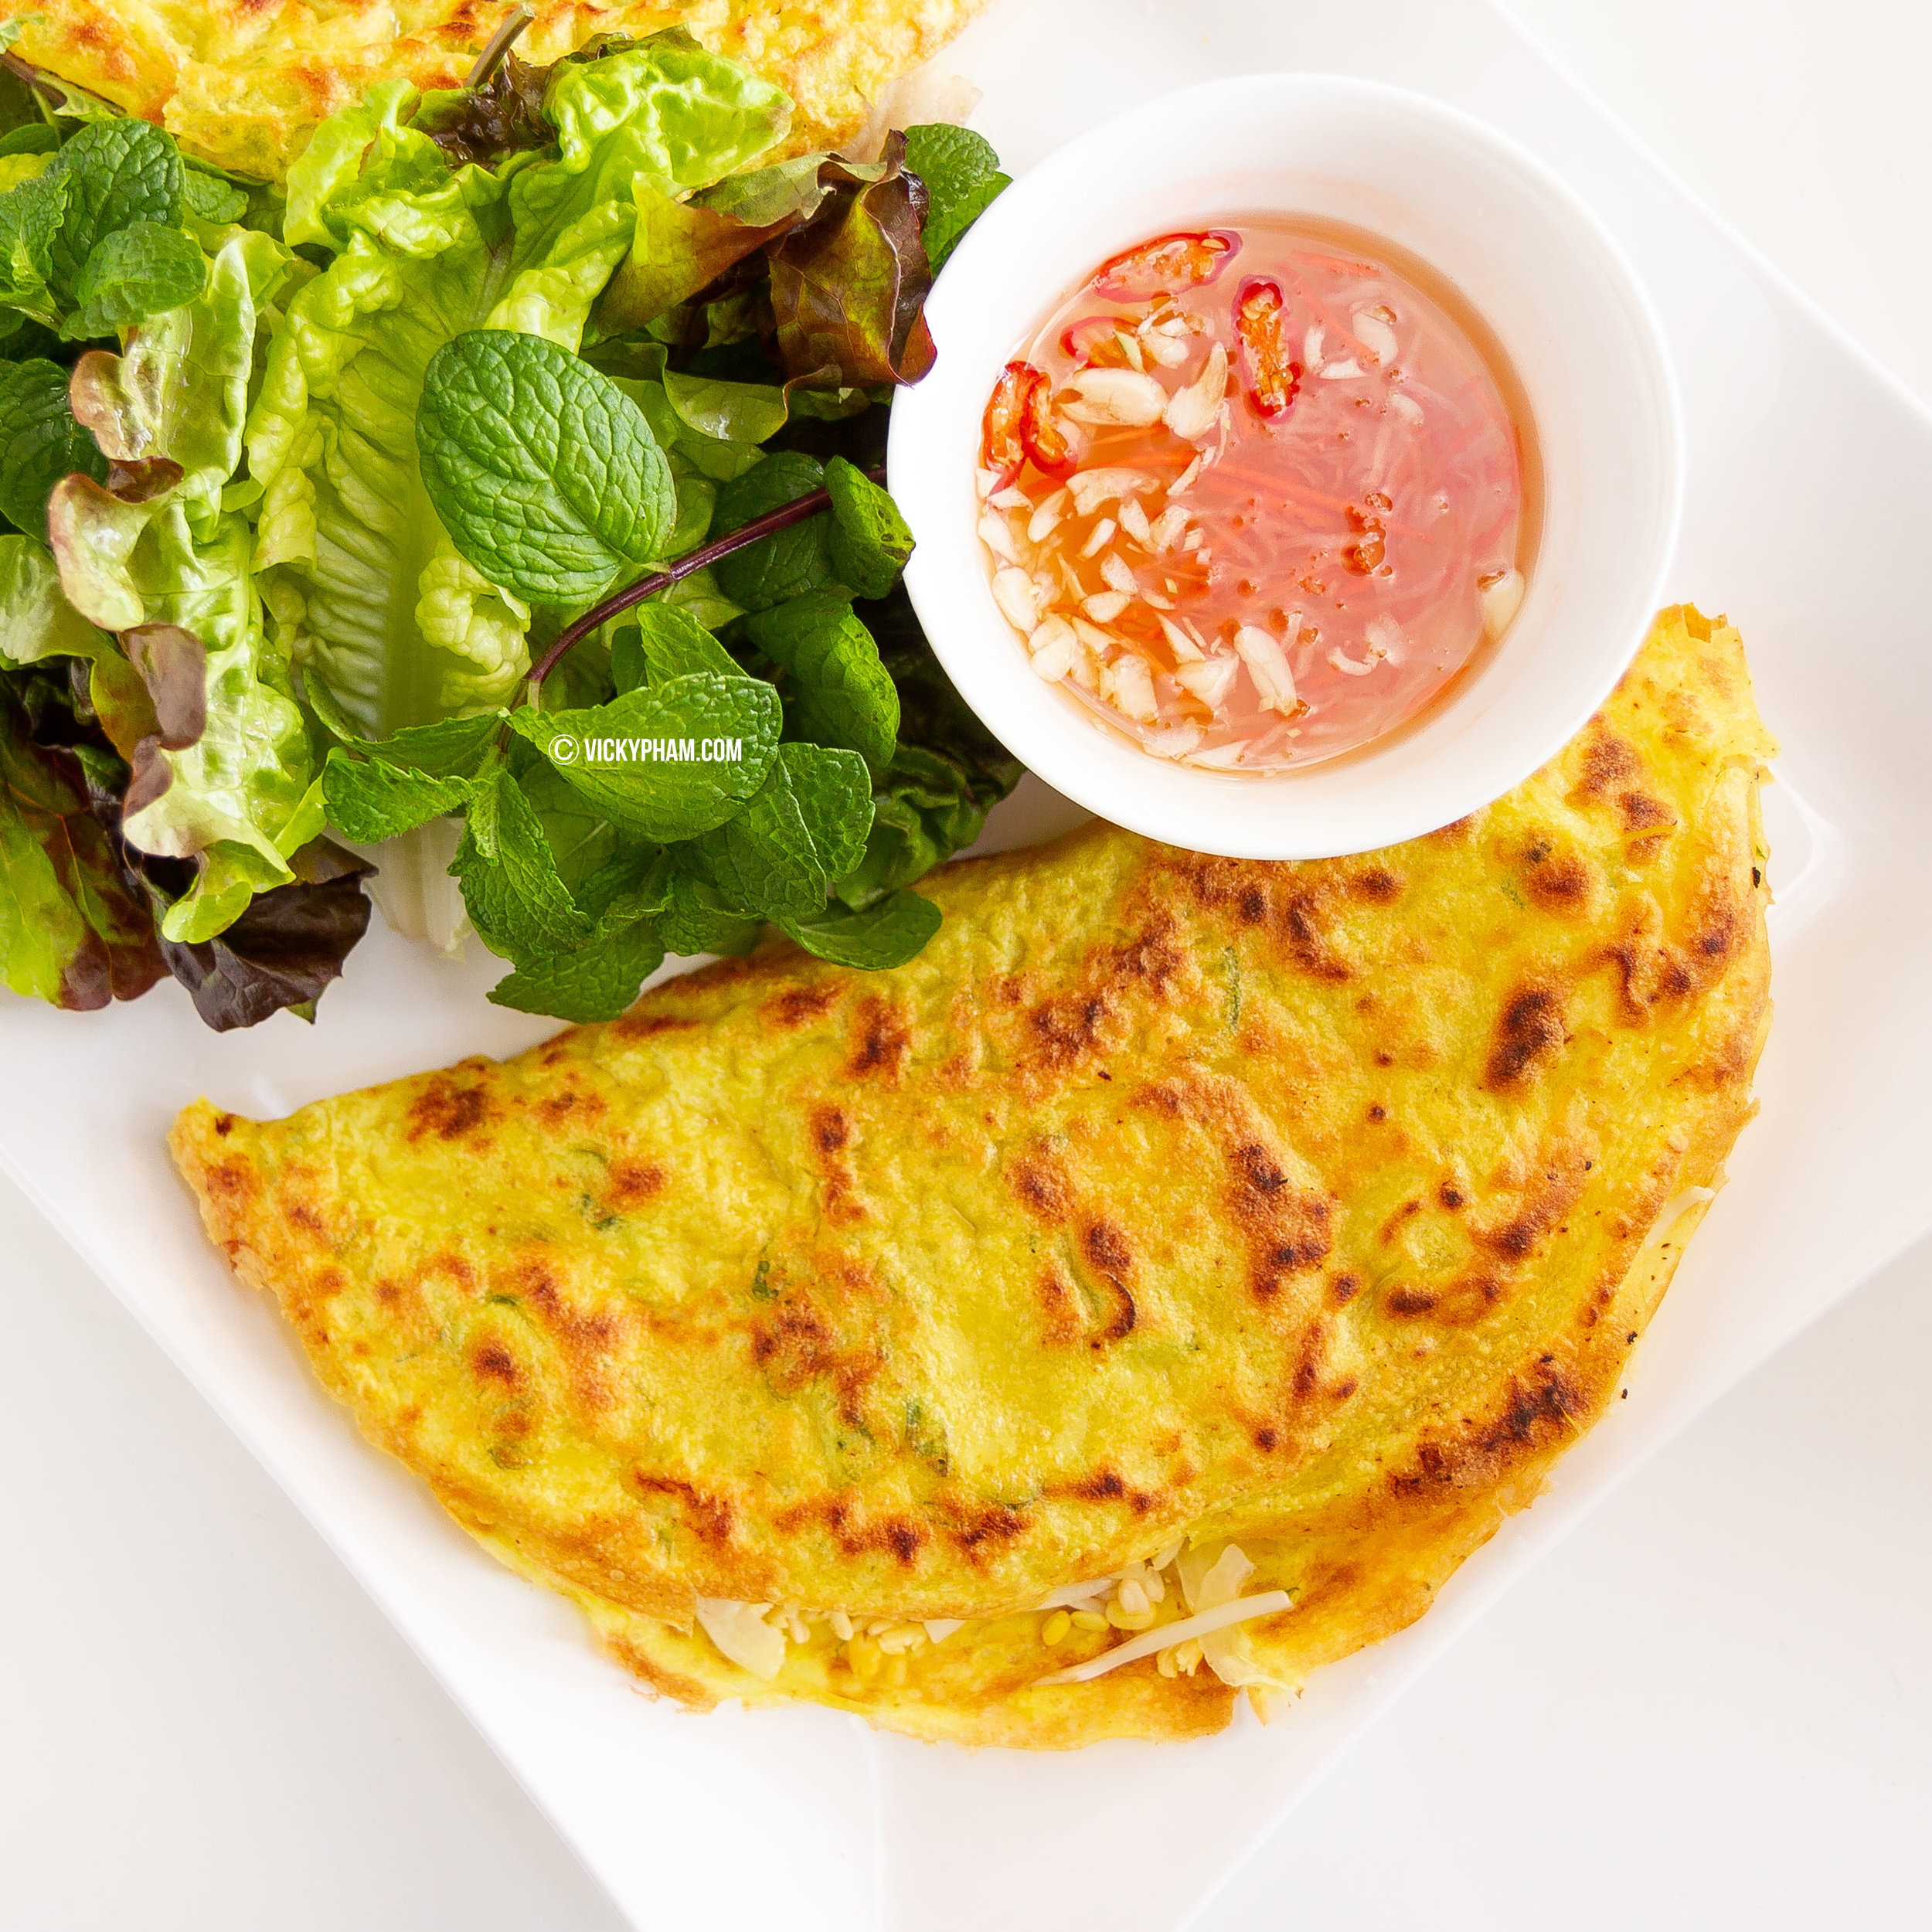 Vietnamese Sizzling Crepe / Pancake (Banh Xeo)